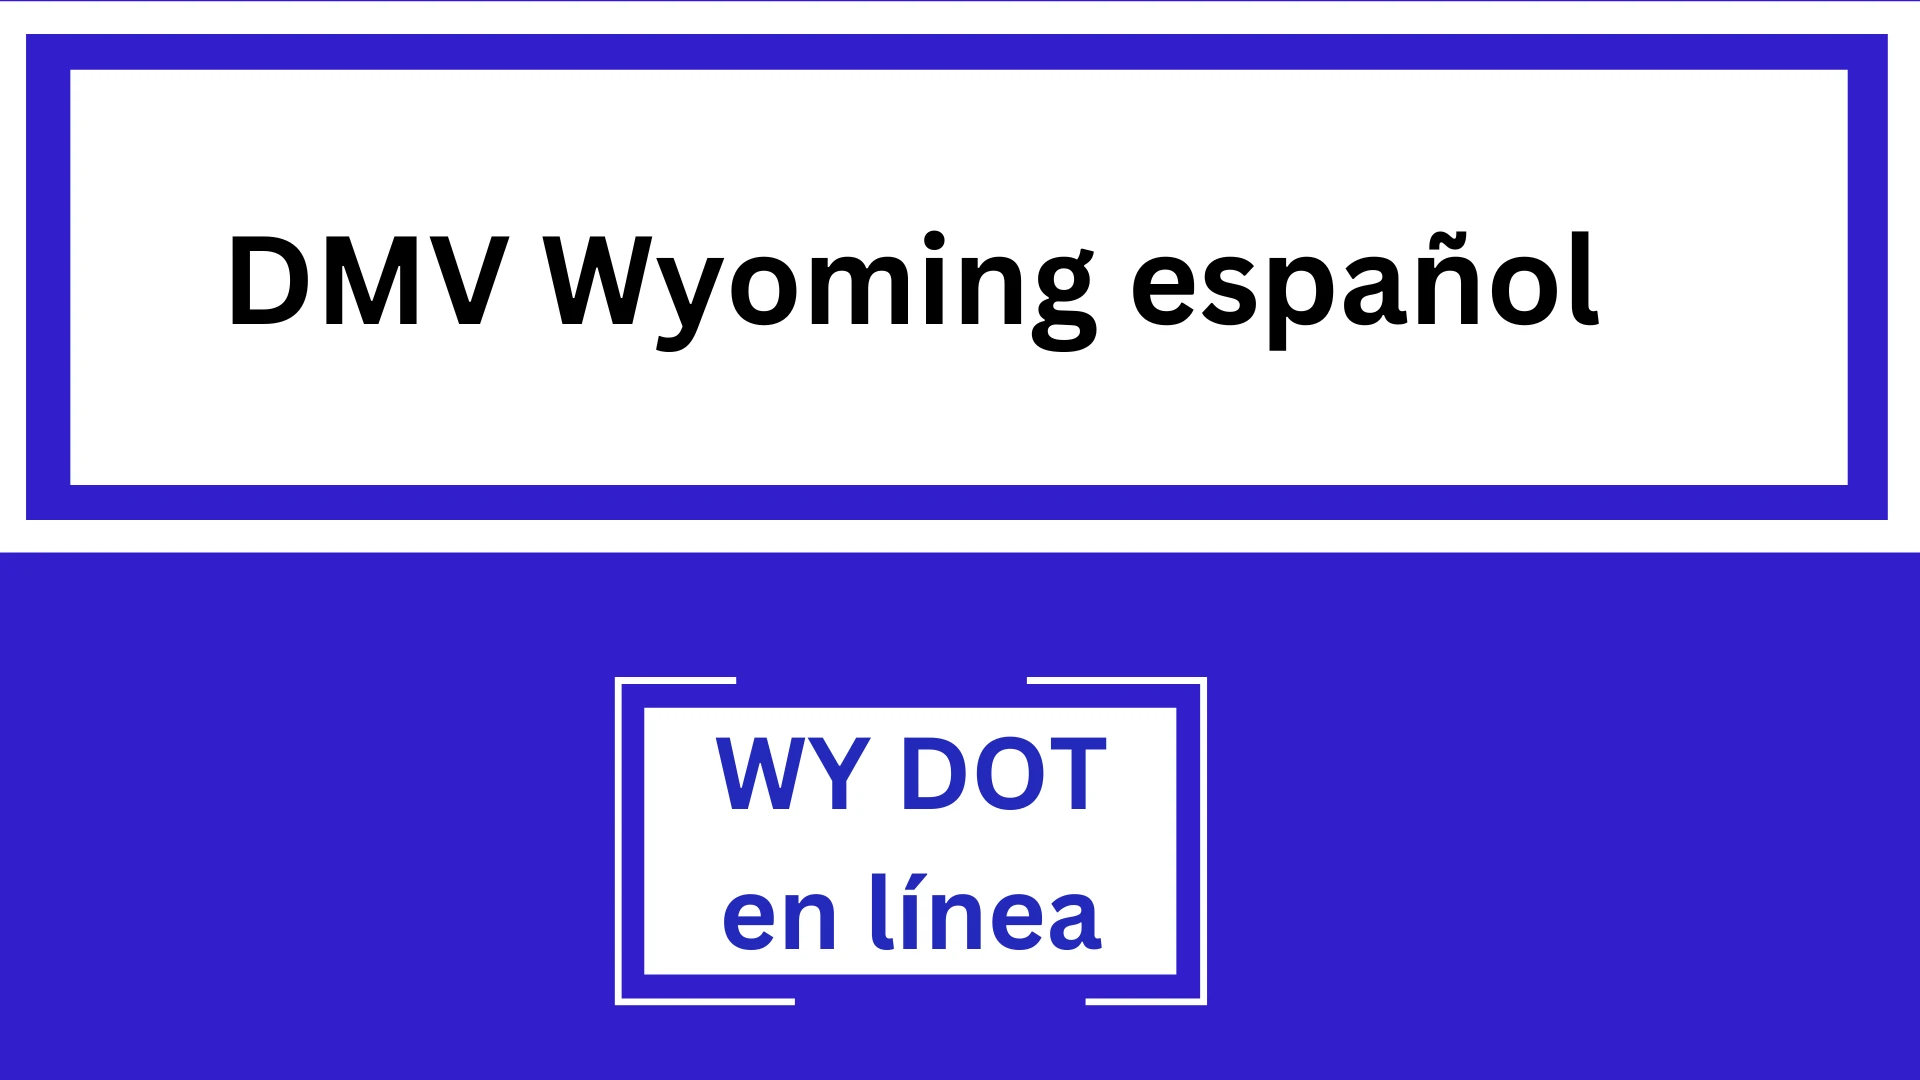 DMV Wyoming